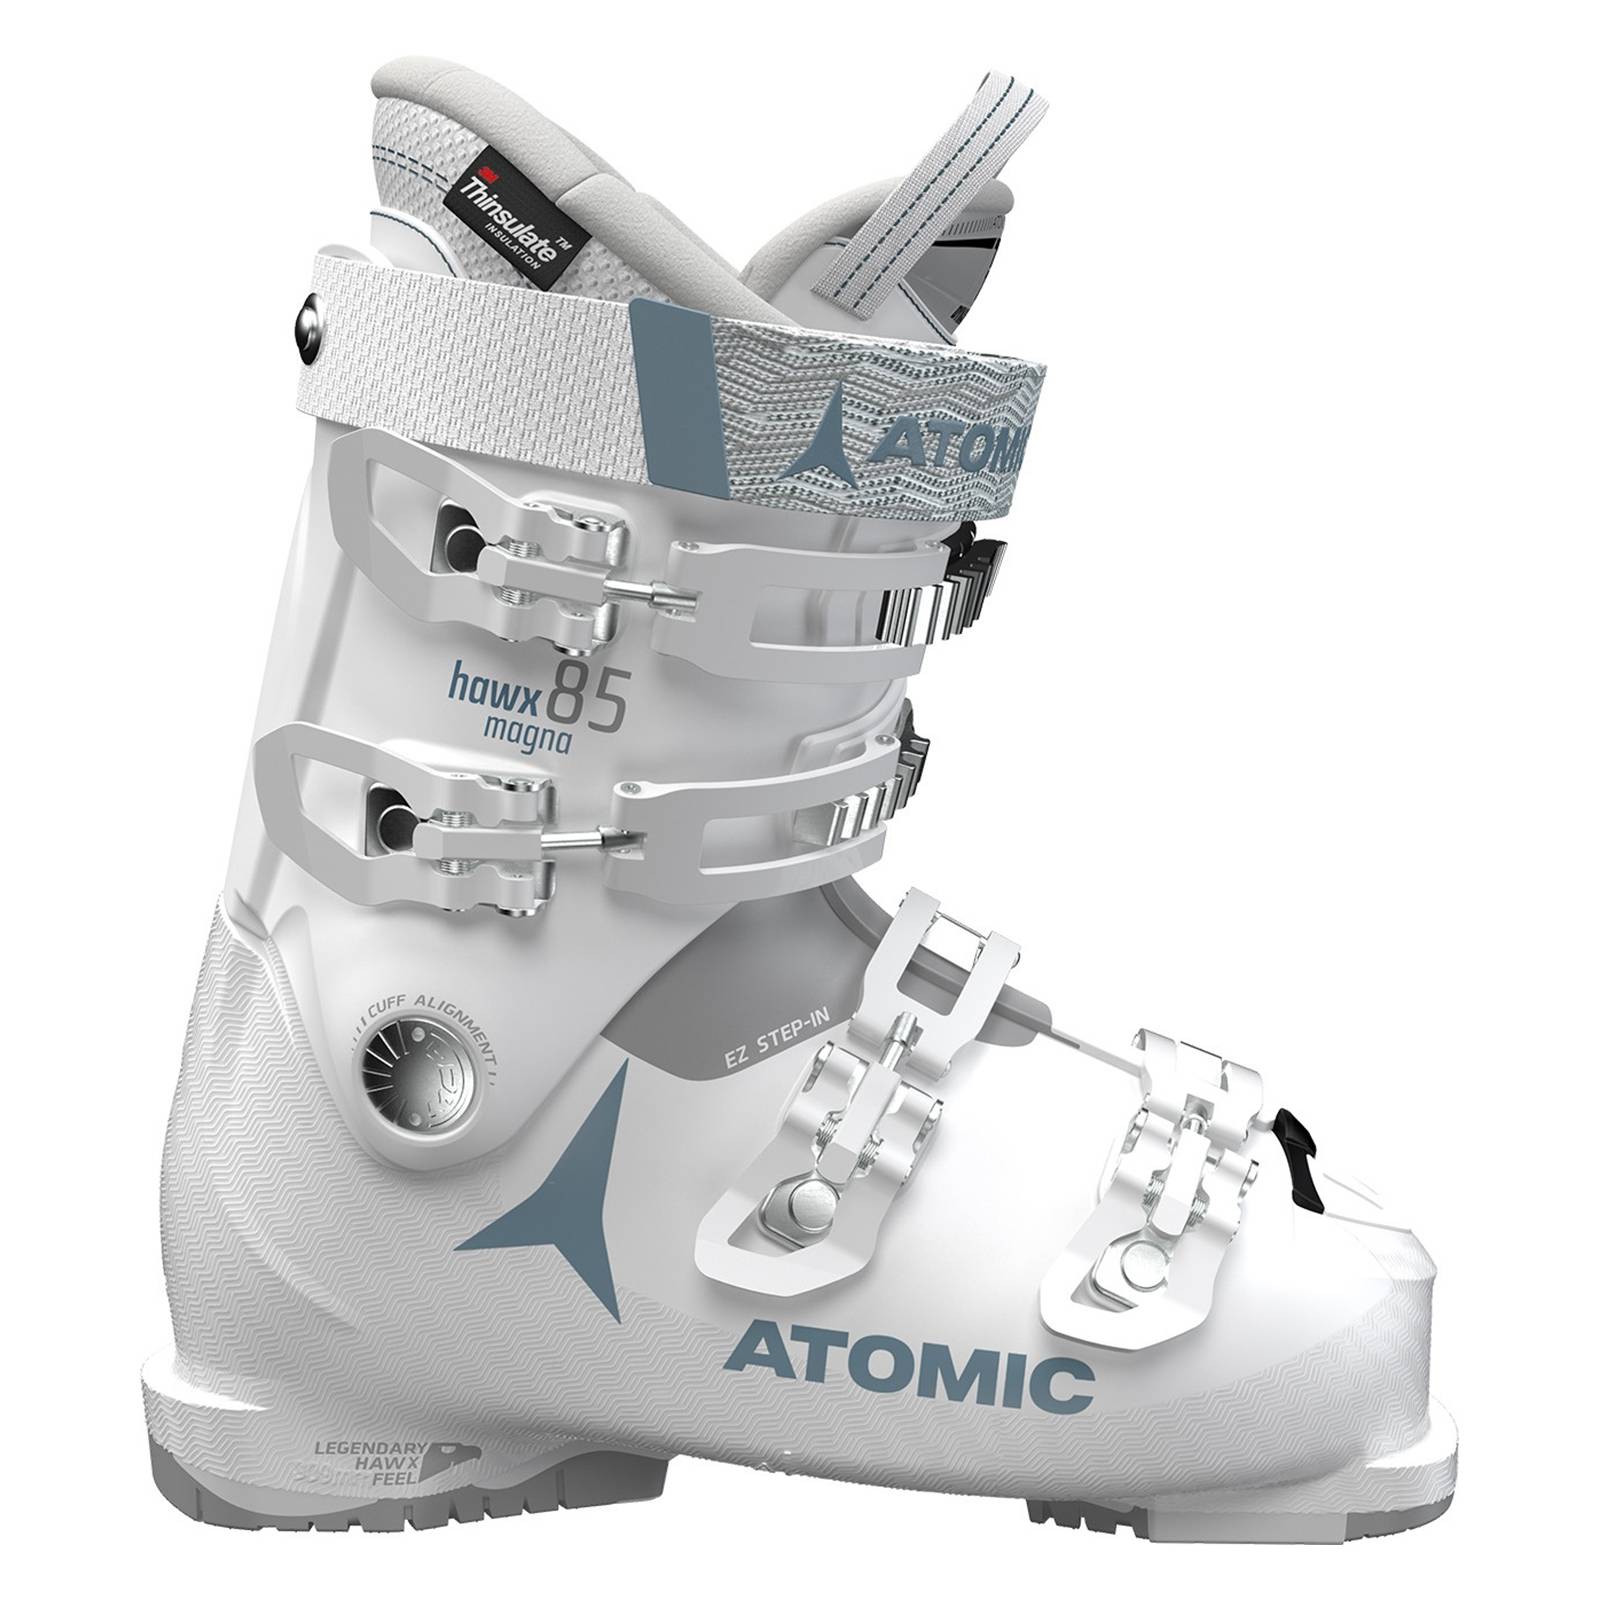 ATOMIC Hawx Magna 85 Damen Skischuhe weiß